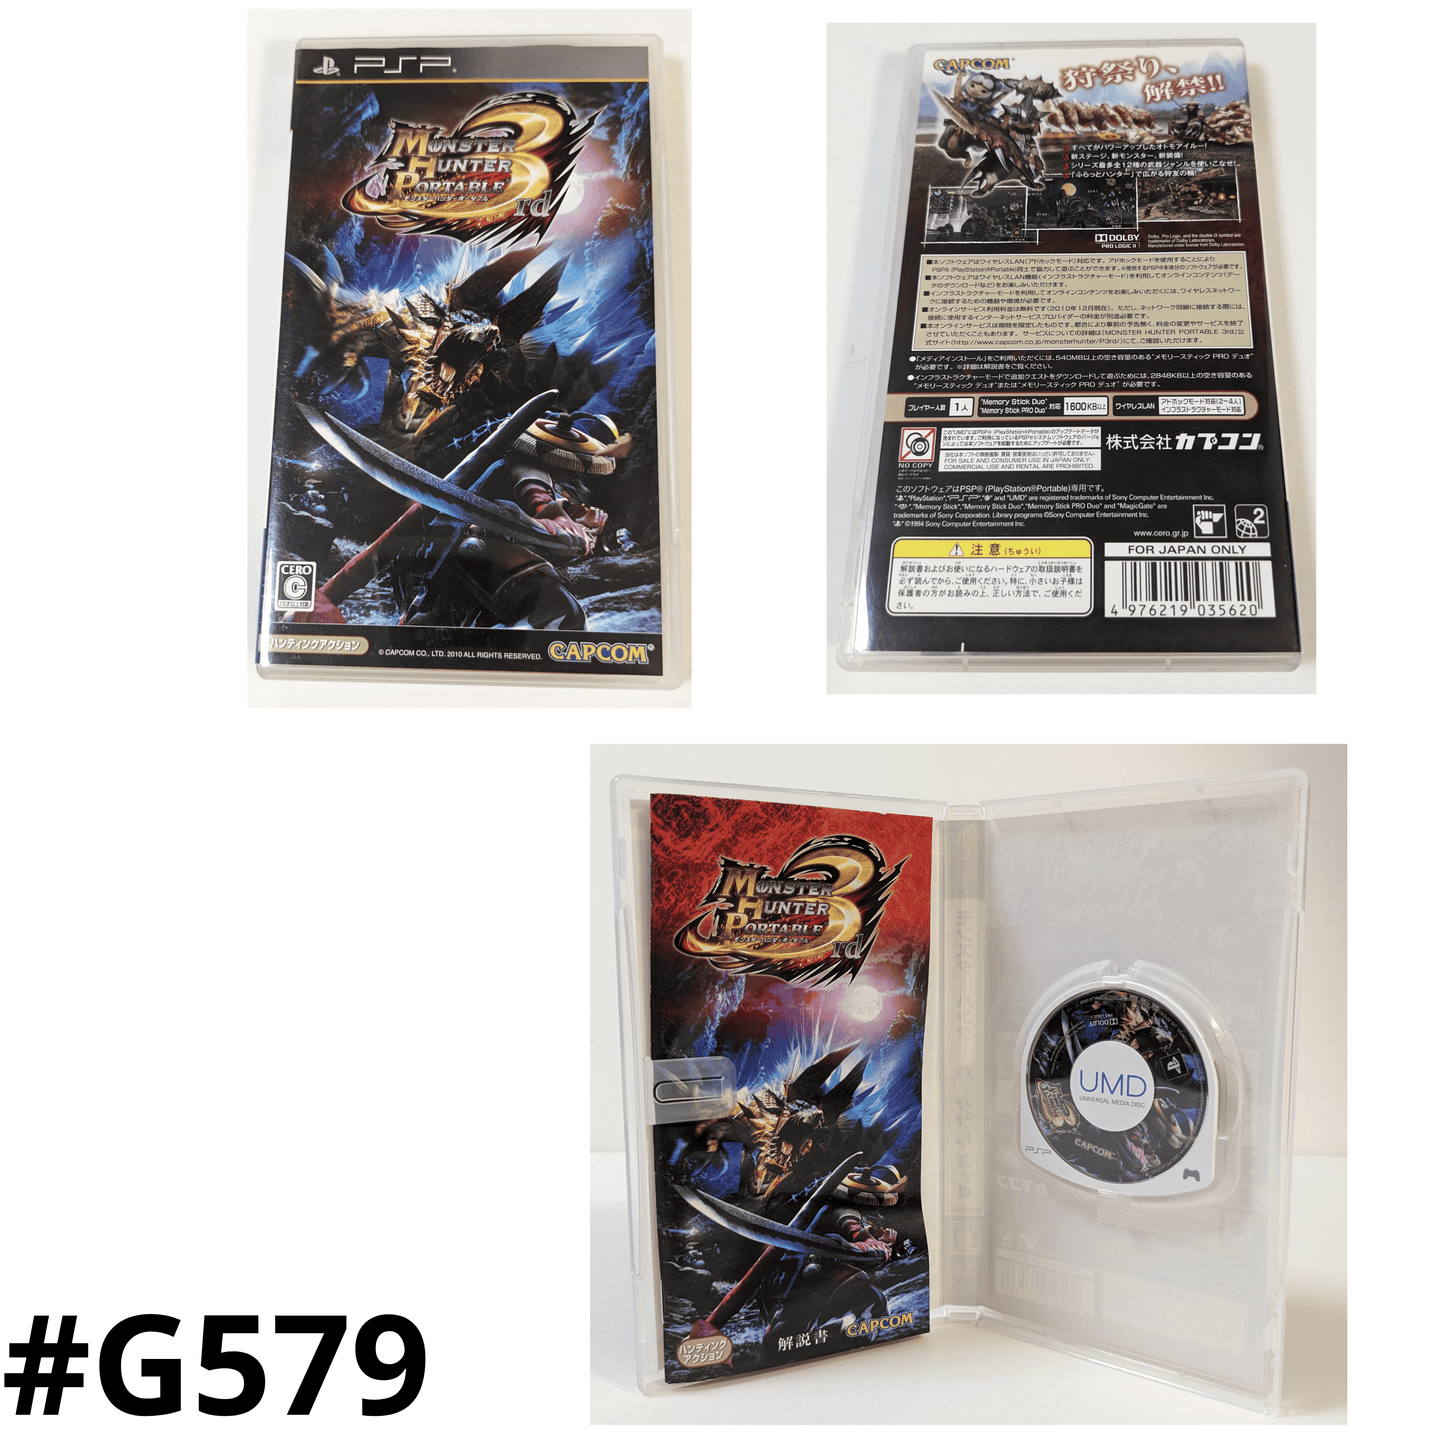 Monster Hunter Portable 3rd | PSP | Japanese